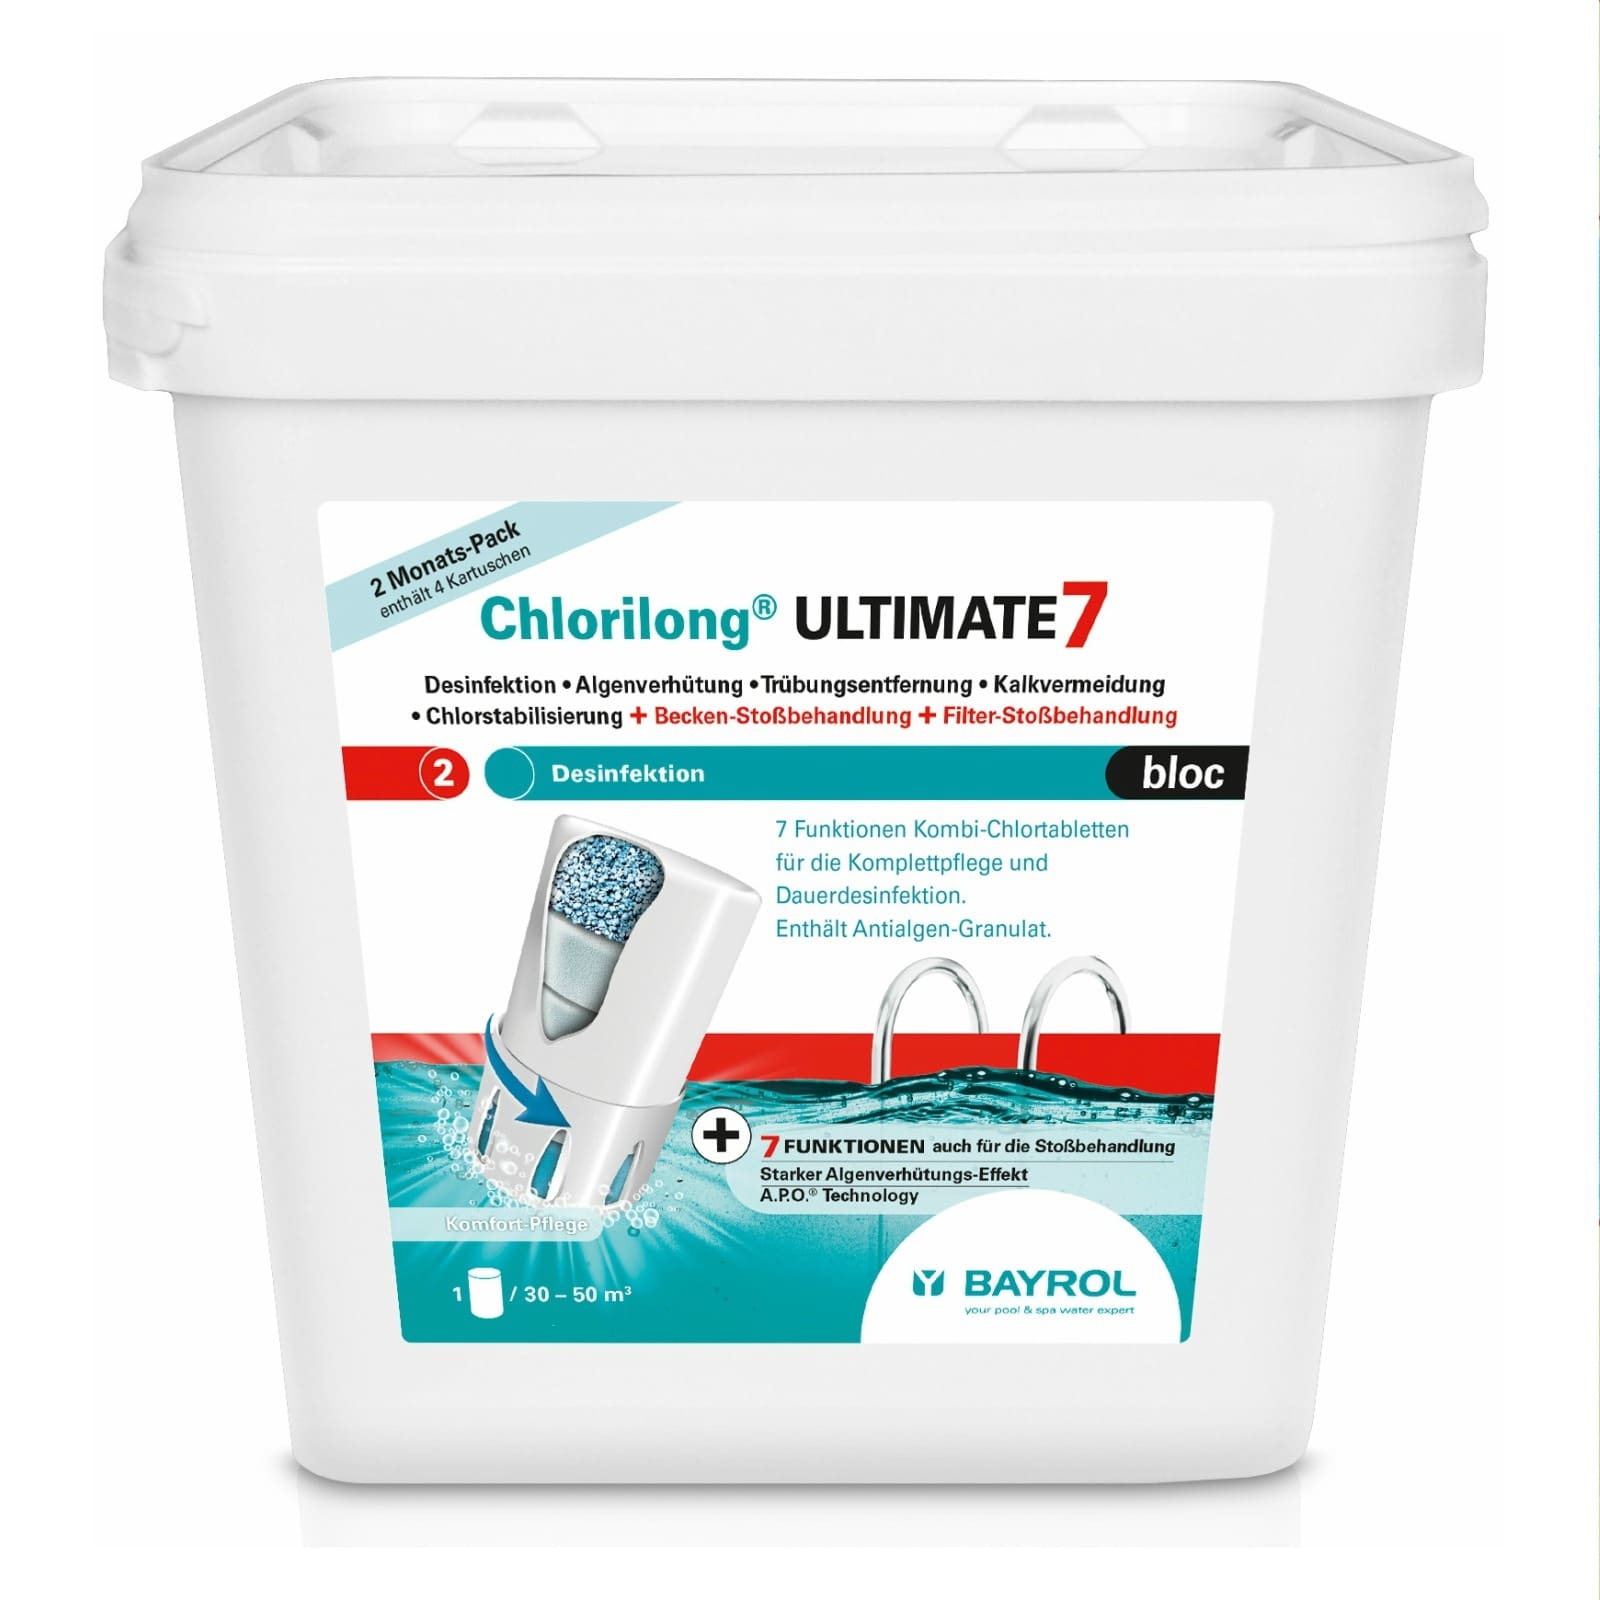 Chlorilong® ULTIMATE 7 Bloc